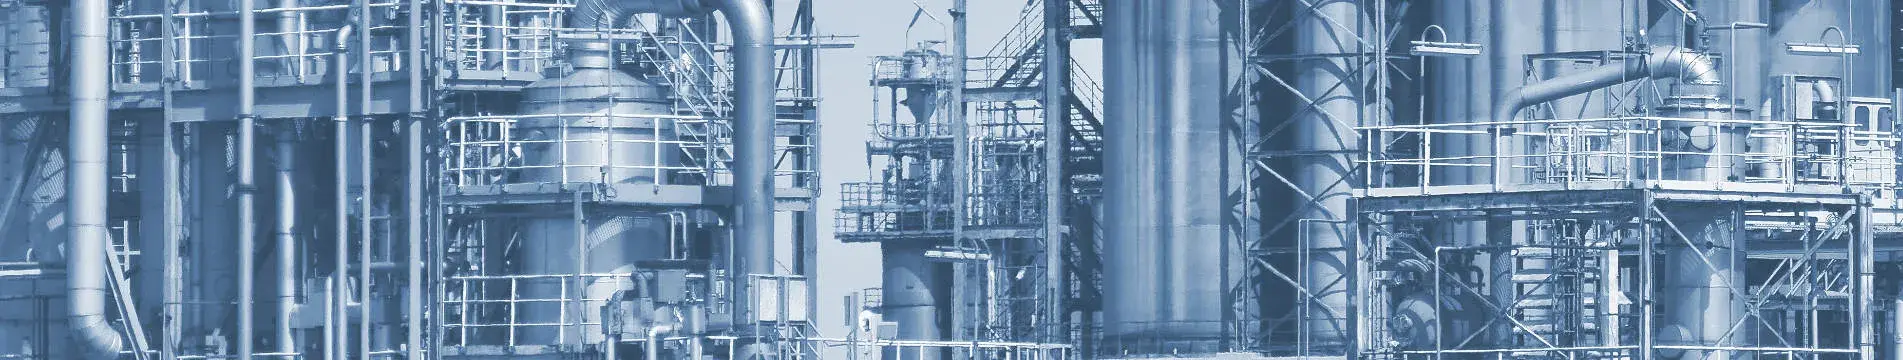 Bildausschnitt Foto einer Raffinerie